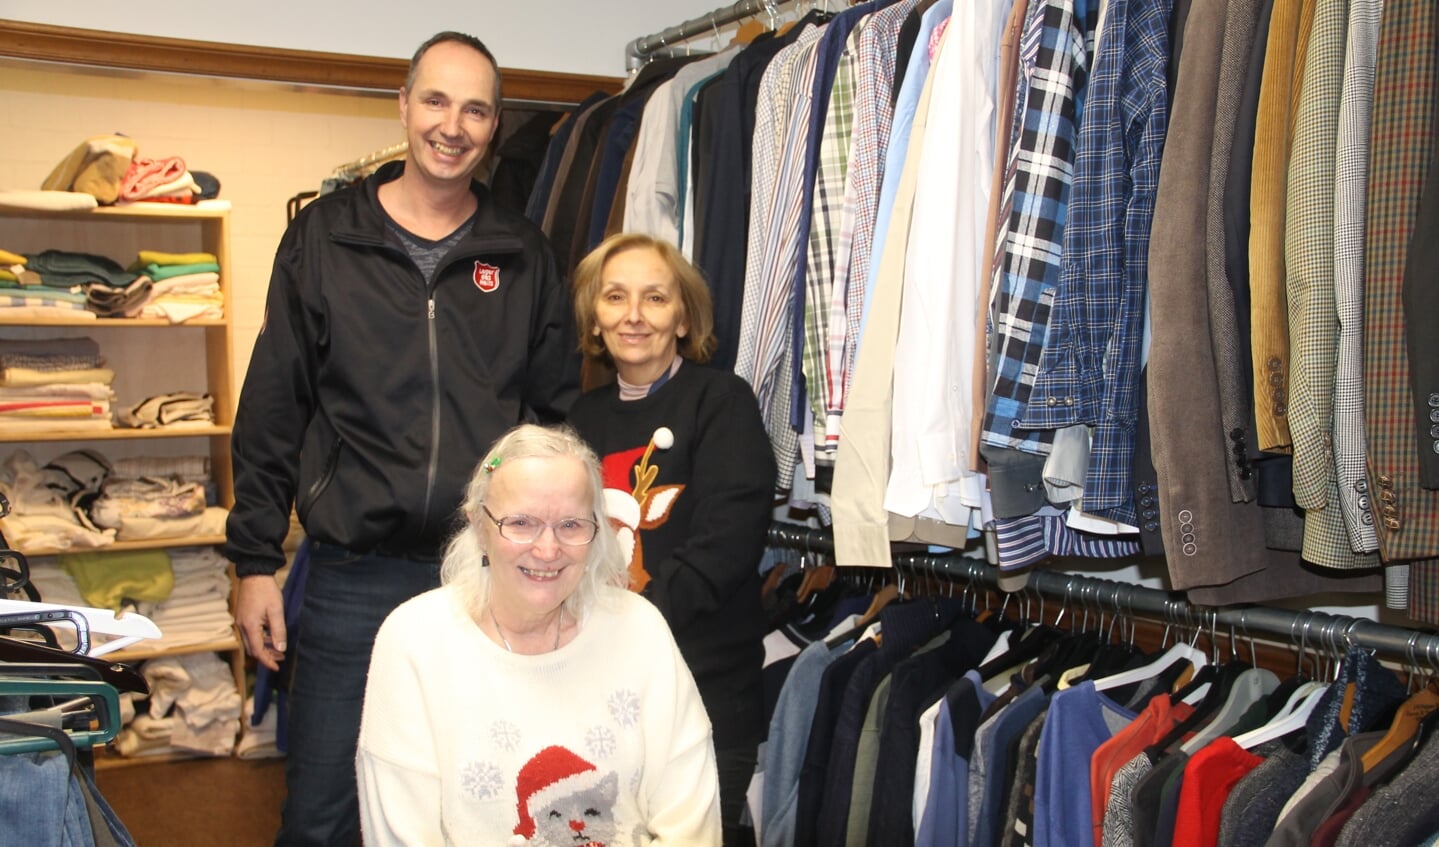 Arnold Vellekoop en vrijwilligers Fatima (r) en Yvonne in de kledingwinkel. Foto Lineke Voltman.